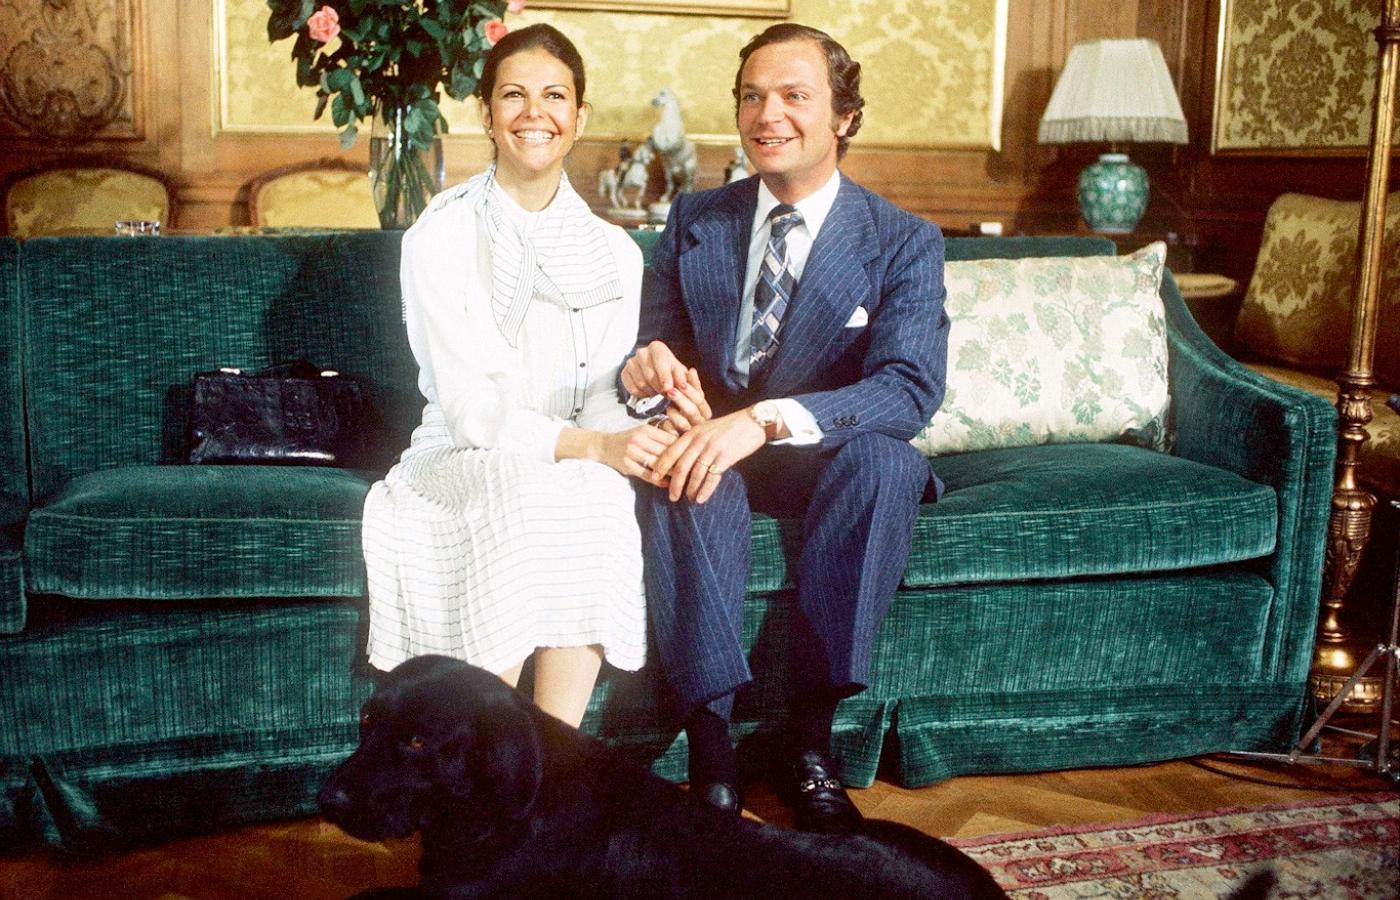 Szwecja, król Karol XVI Gustaw z nowo poślubioną żoną Sylwią, czerwiec 1976 r. To małżeństwo z panną z dobrego, ale niewysokiego domu rozpoczęło na królewskich dworach nową erę.